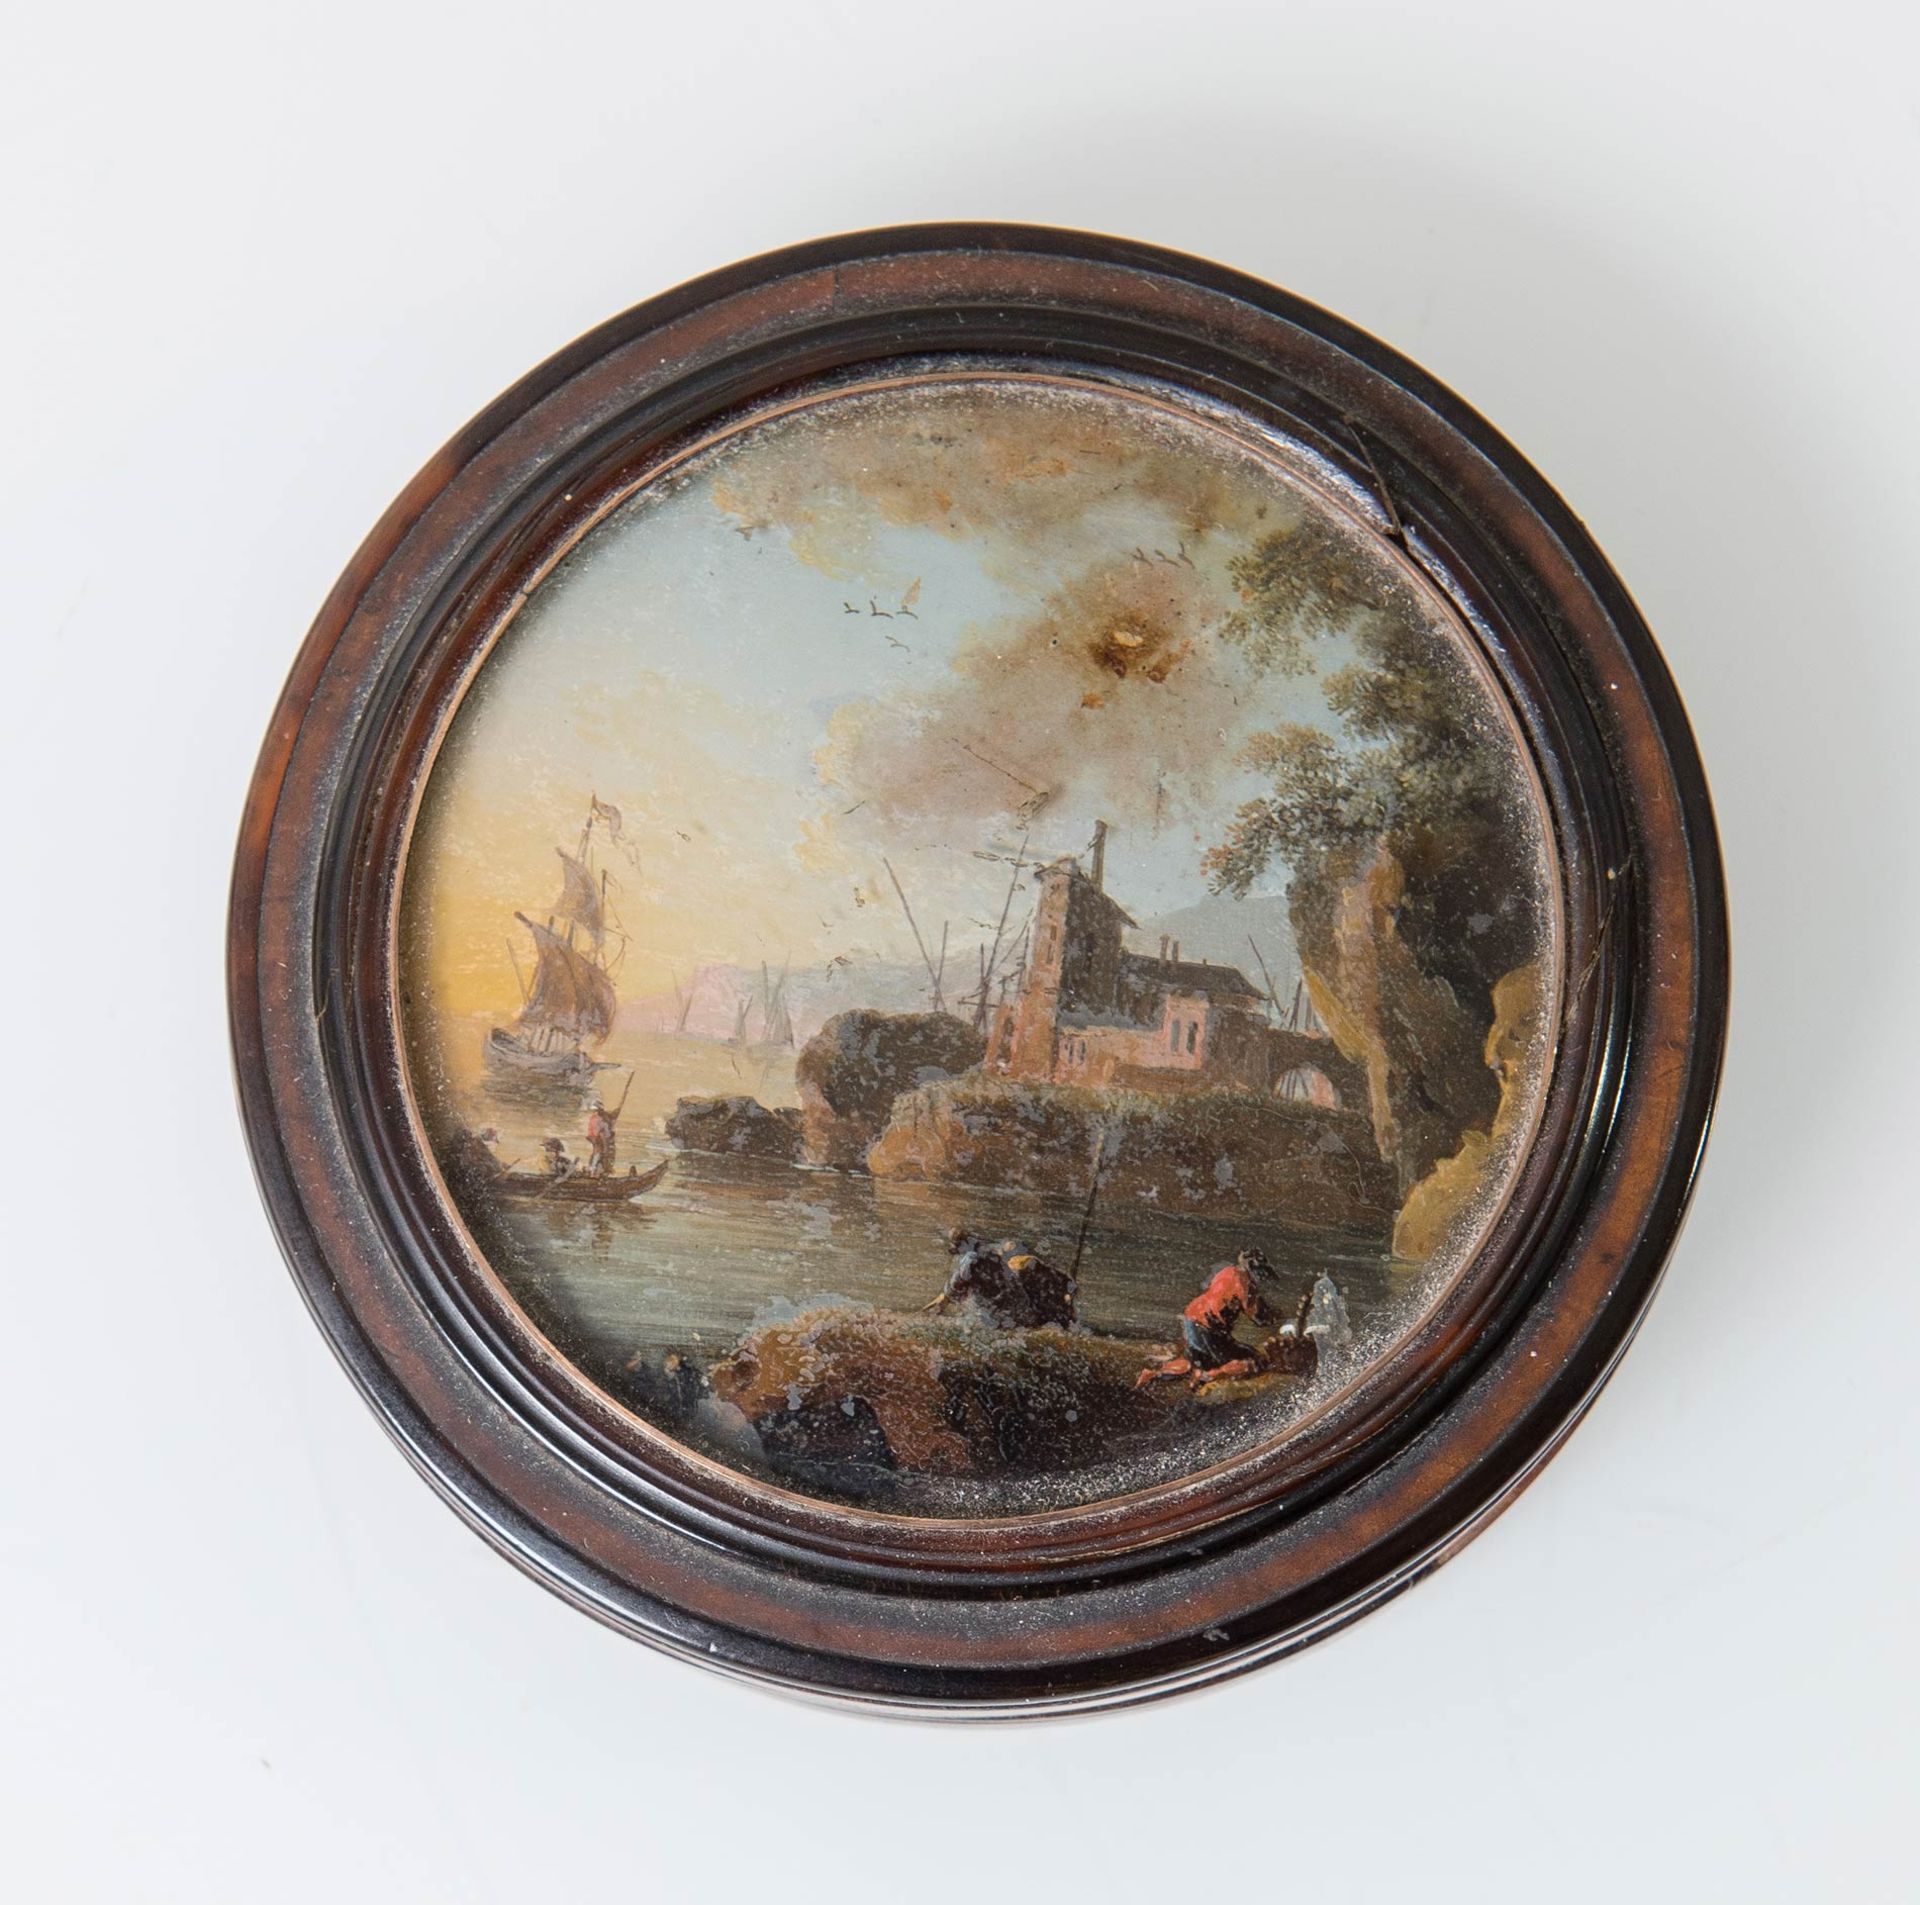 Tabacchiera in radica con fixé sous verre sul coperchio raffigurante scena di porto, XVIII secolo.